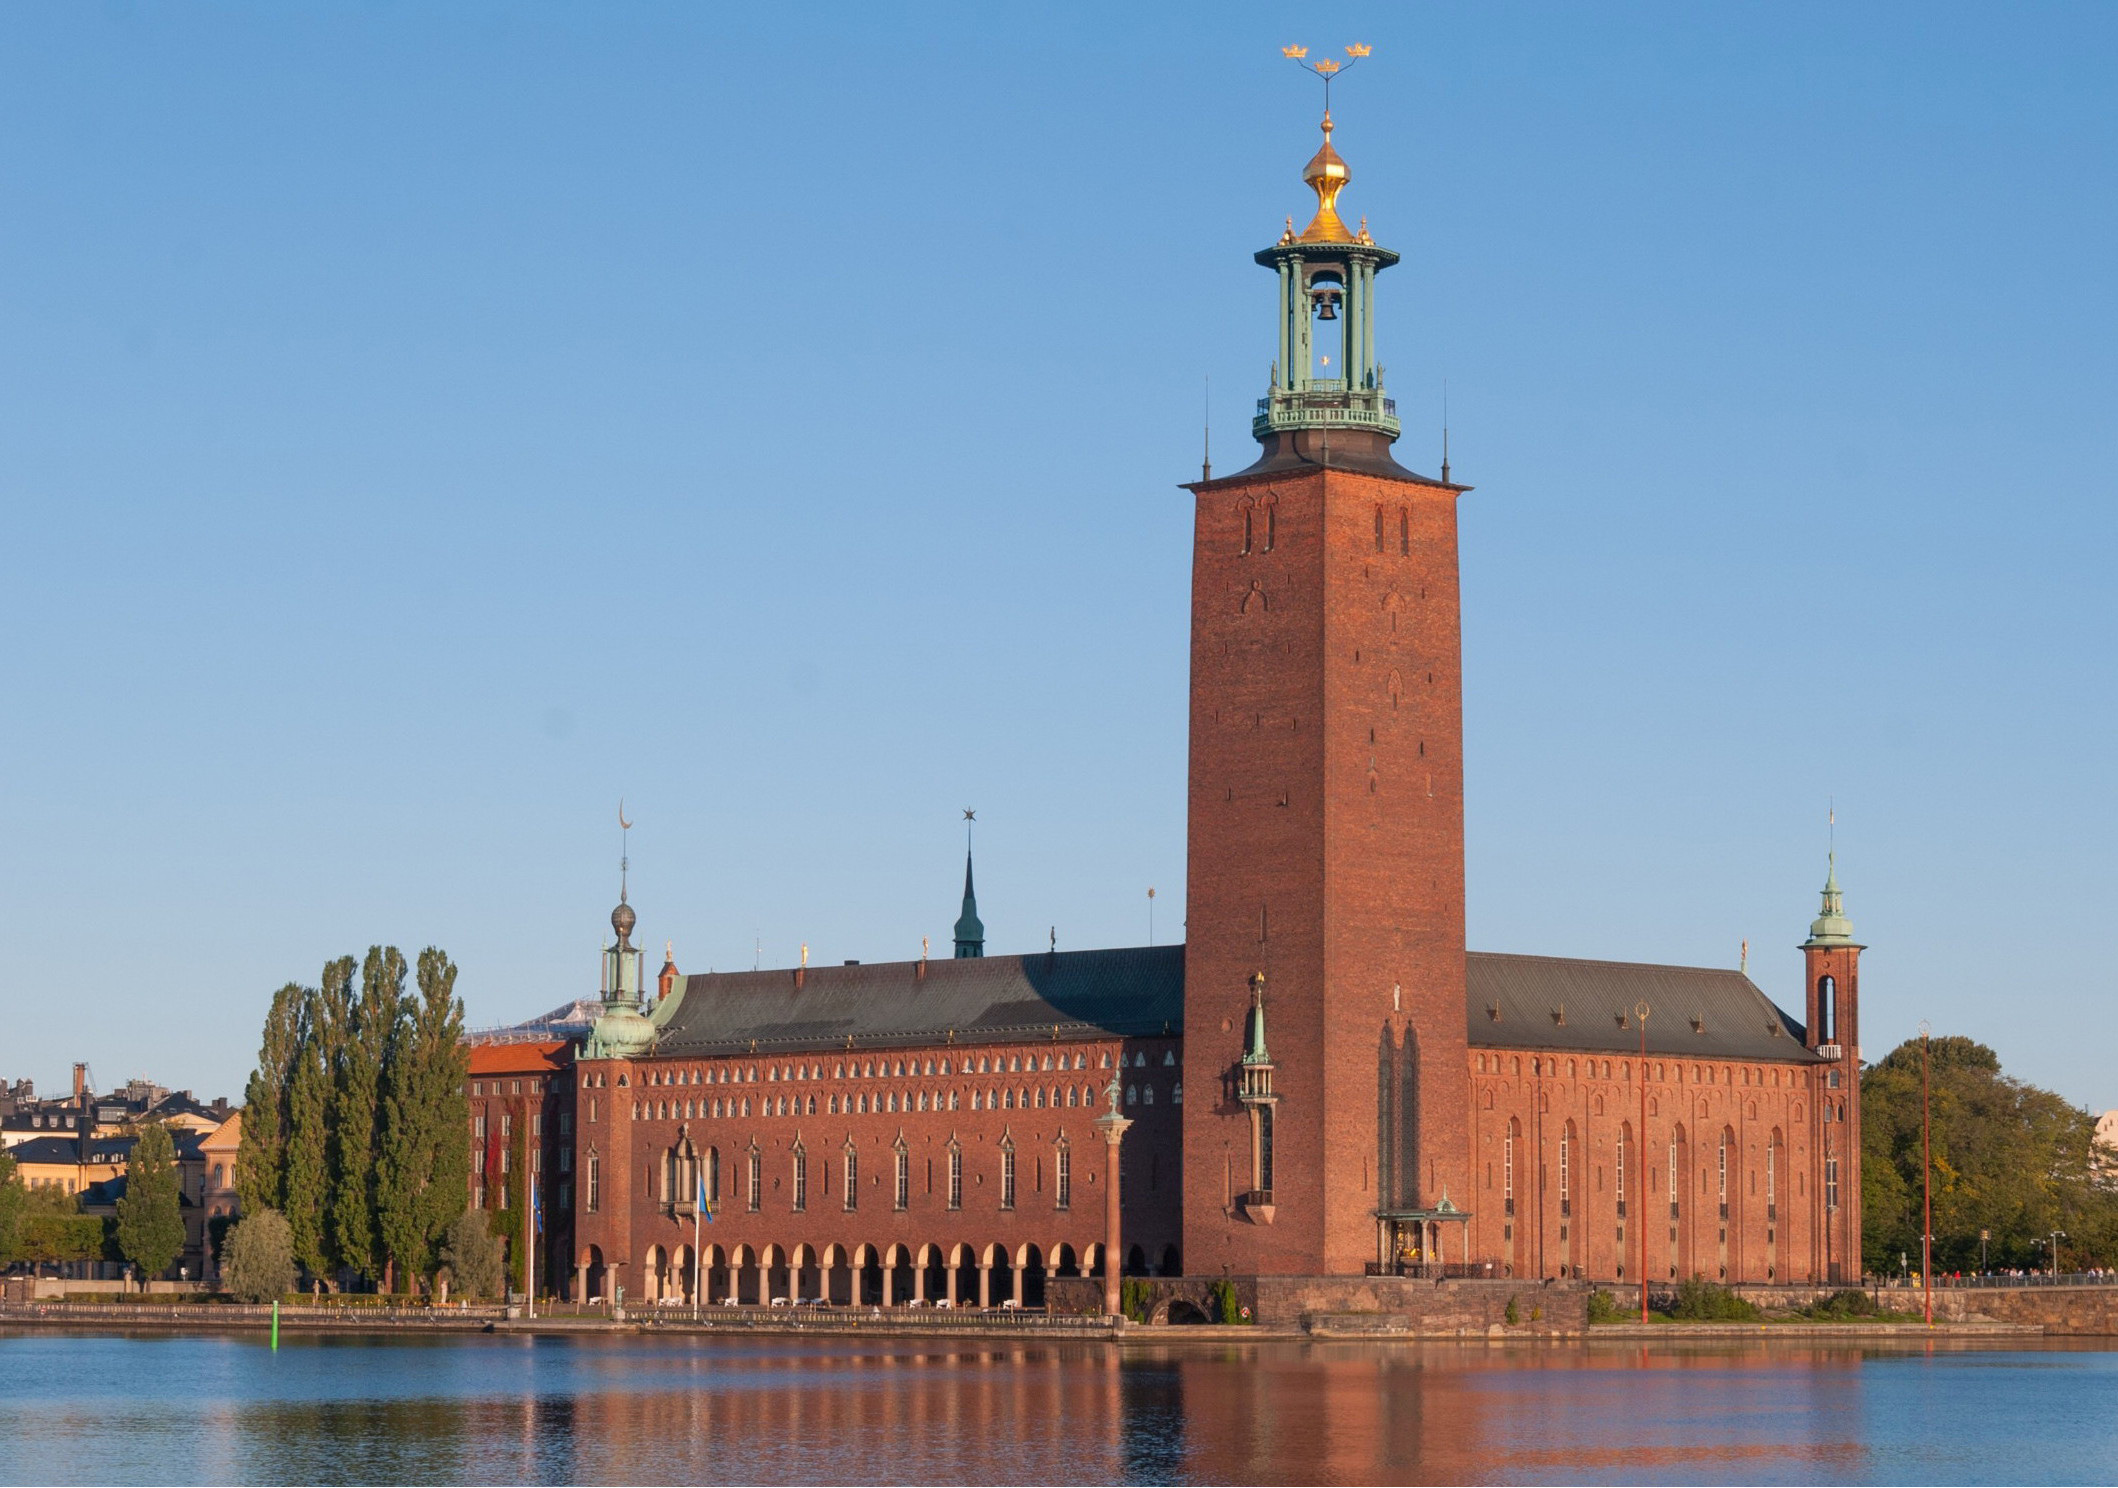 Är Stadshuset i Stockholm Sveriges vackraste byggnad genom tiderna?